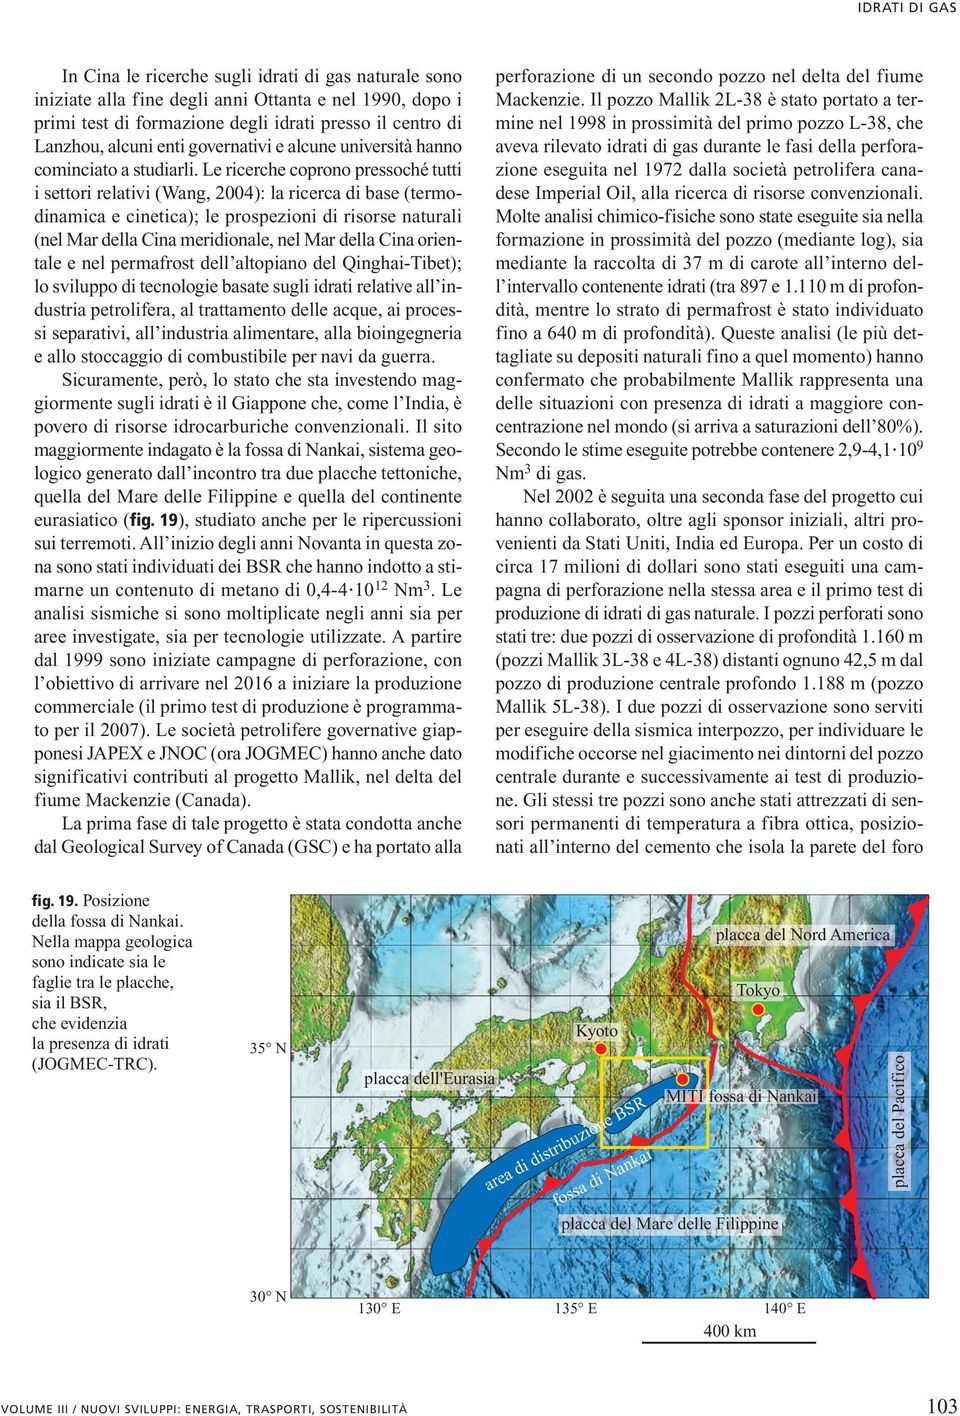 Le ricerche coprono pressoché tutti i settori relativi (Wang, 2004): la ricerca di base (termodinamica e cinetica); le prospezioni di risorse naturali (nel Mar della Cina meridionale, nel Mar della